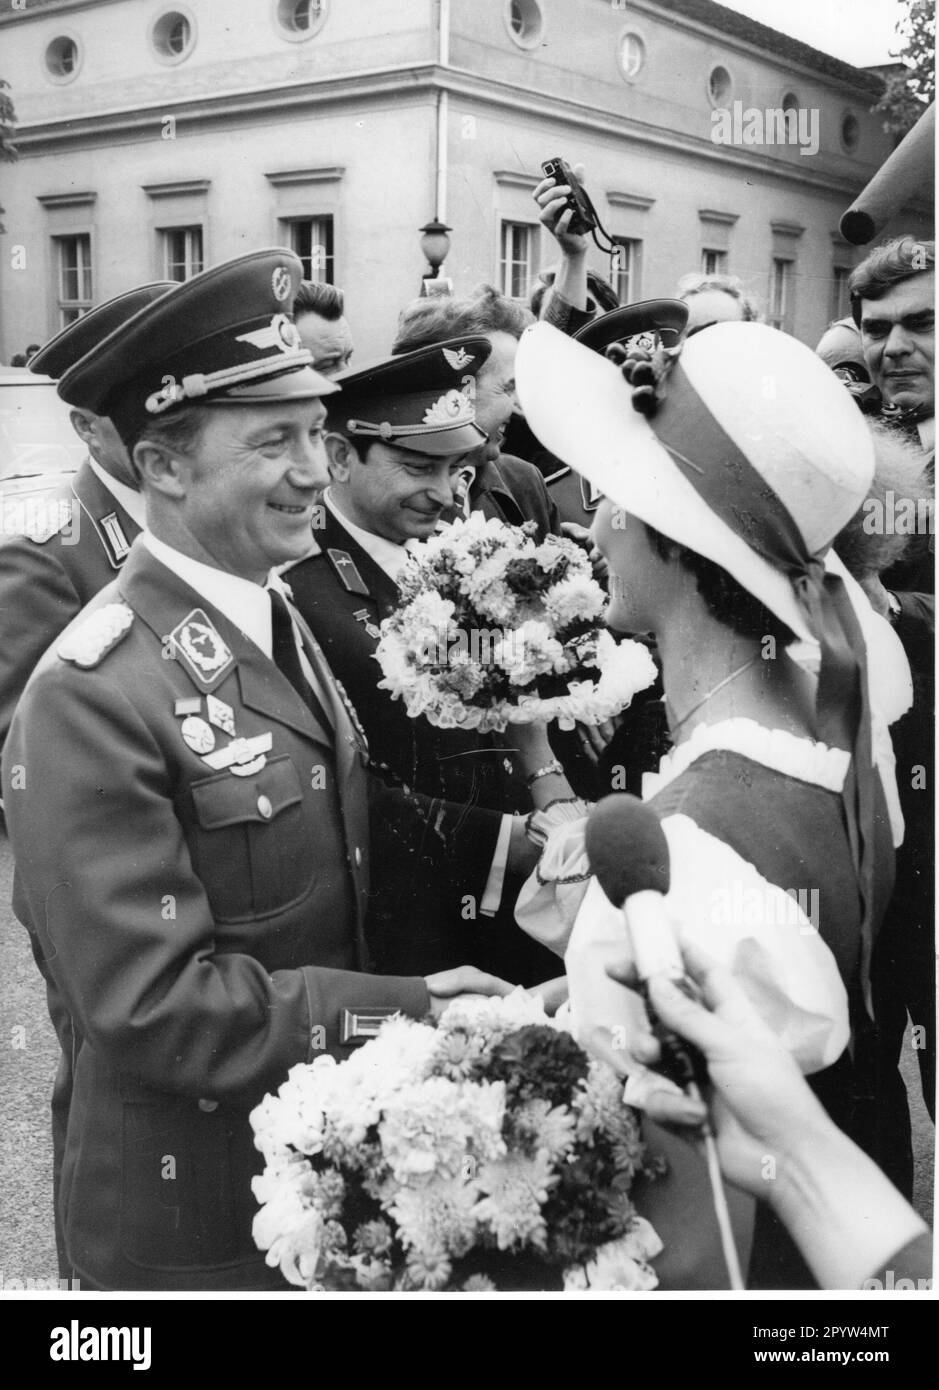 Wir begrüßen die Kosmonauten in Potsdam. Der Raumfahrer Siegmund Jähn (vorne) wird mit Blumen begrüßt. Astronauten/Raumfahrer. Foto: MAZ/Dieter Pein, ca. 1983 [automatisierte Übersetzung] Stockfoto